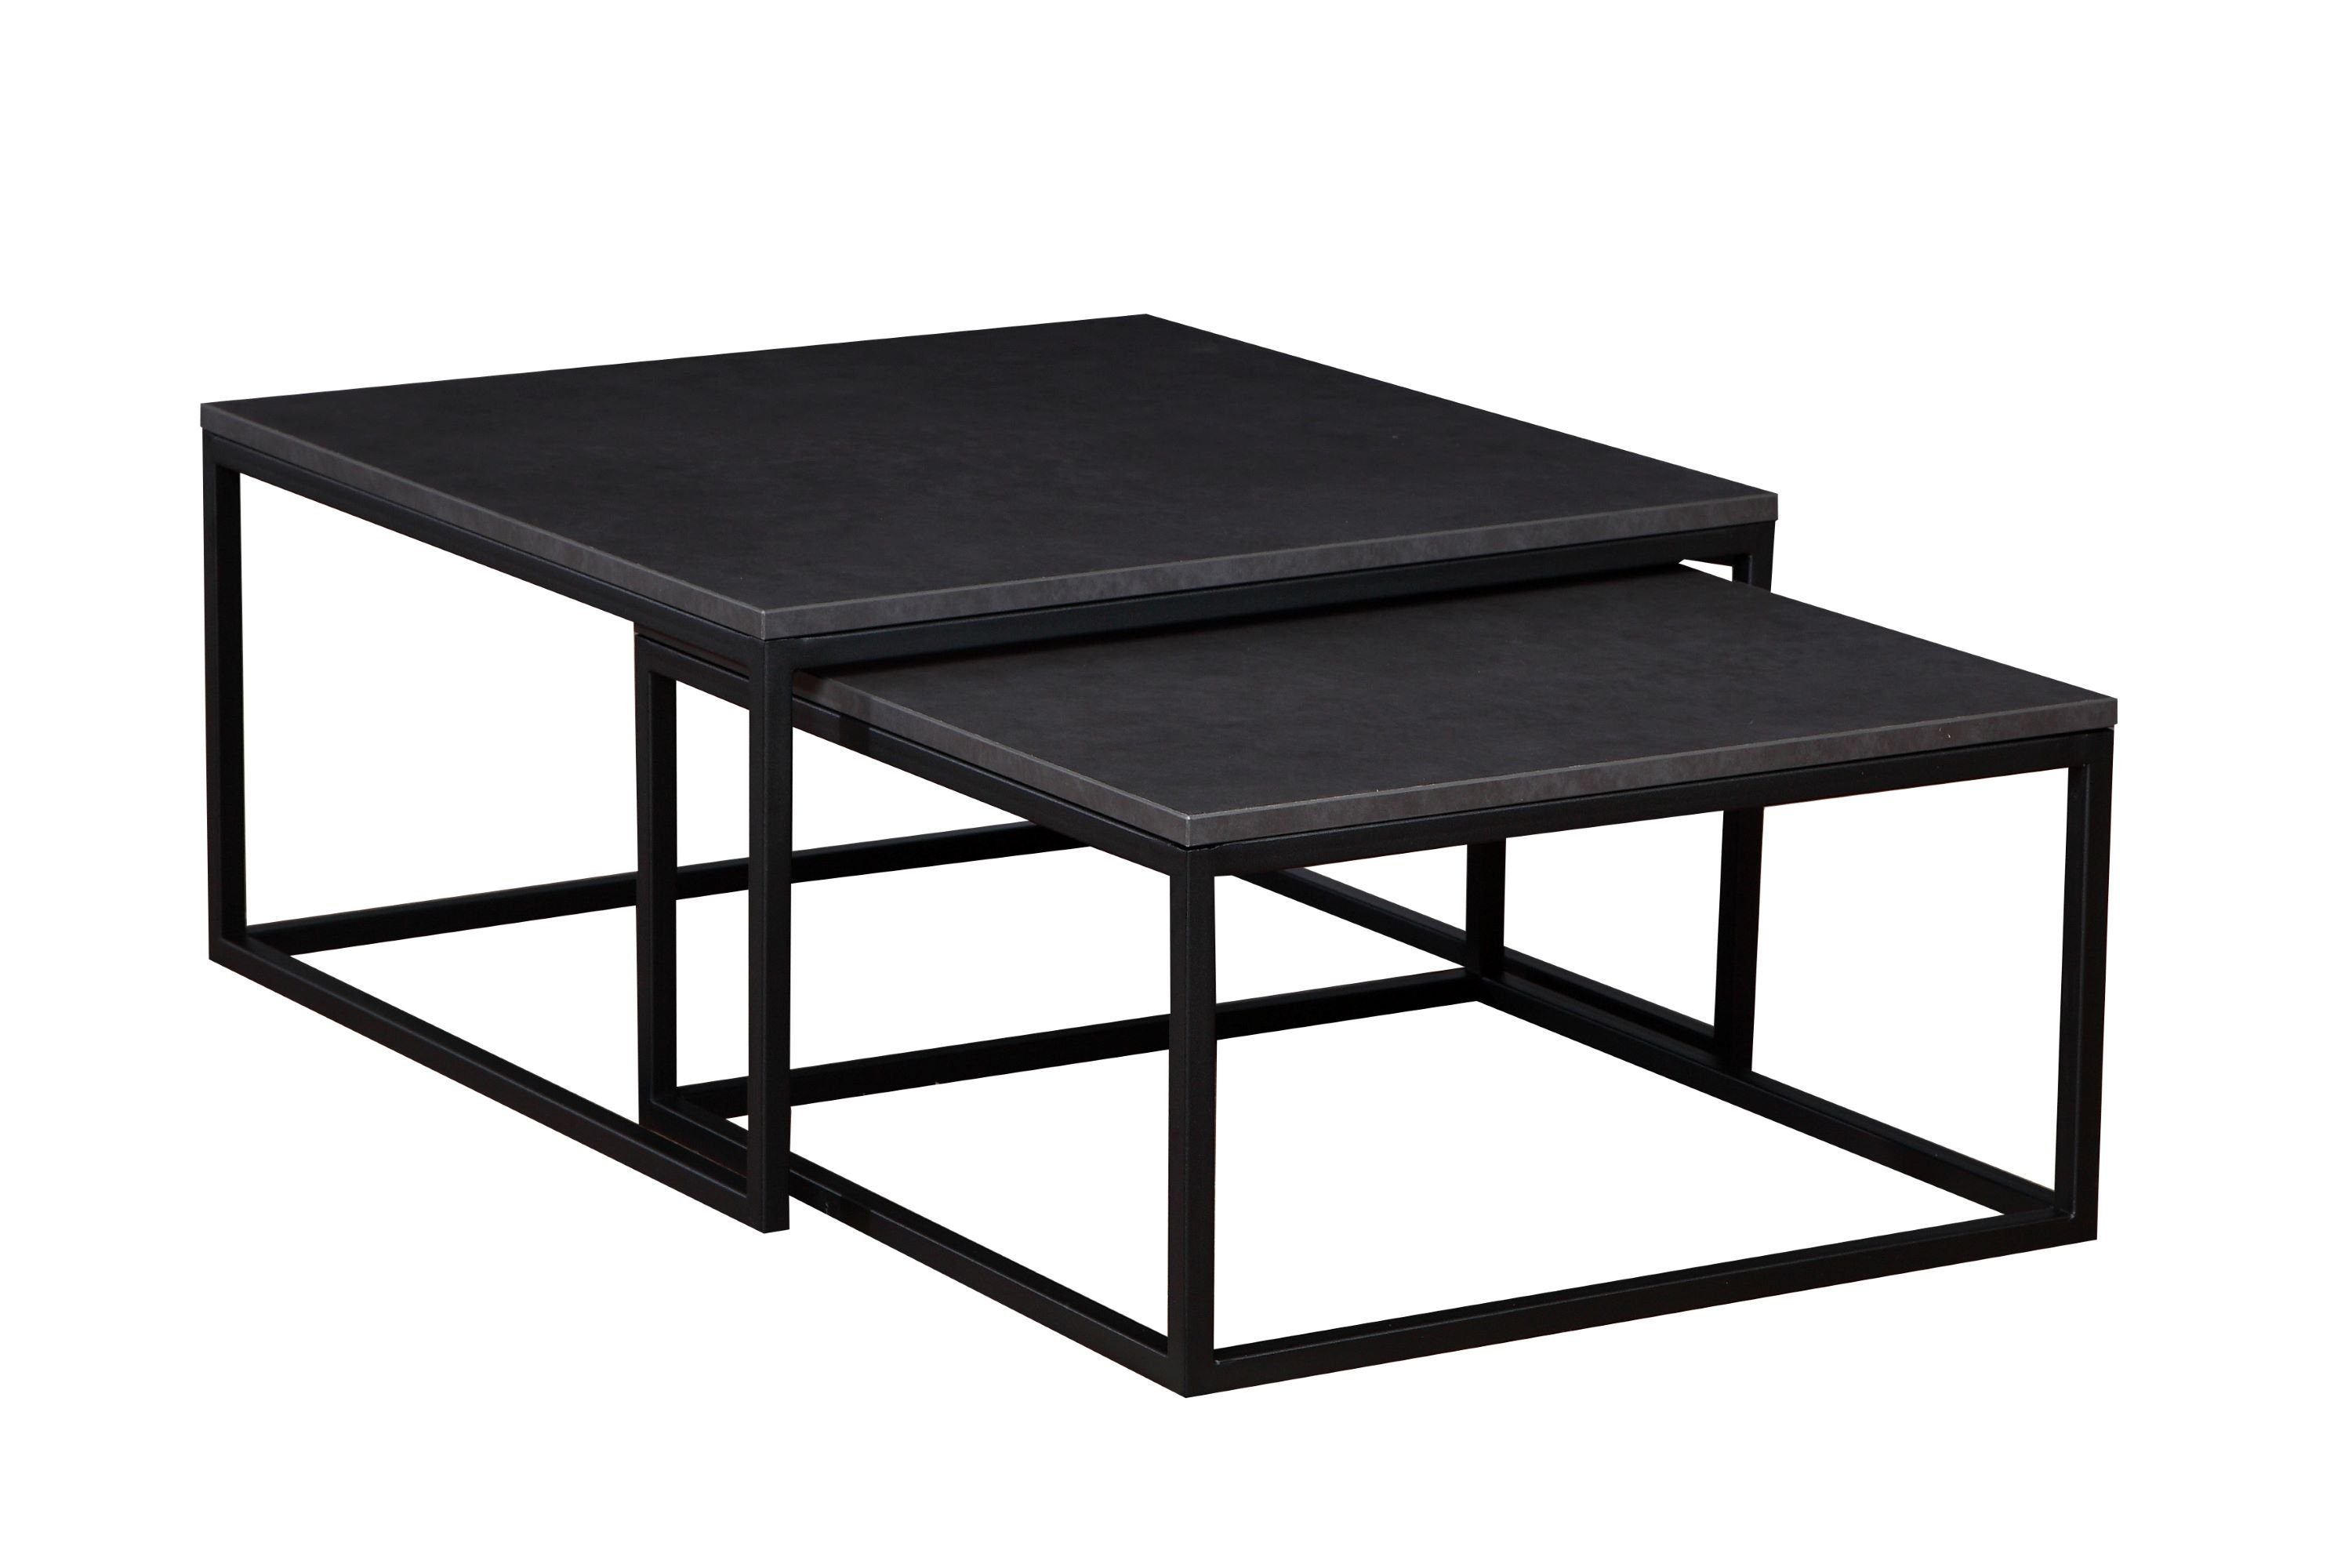 Polini Home Couchtisch Couchtisch-Set 2-teilig KAMPEN dunkelgrau/schwarz, Laminierte Tischplatte, hitzebeständige, stoß- und kratzfeste Tisch